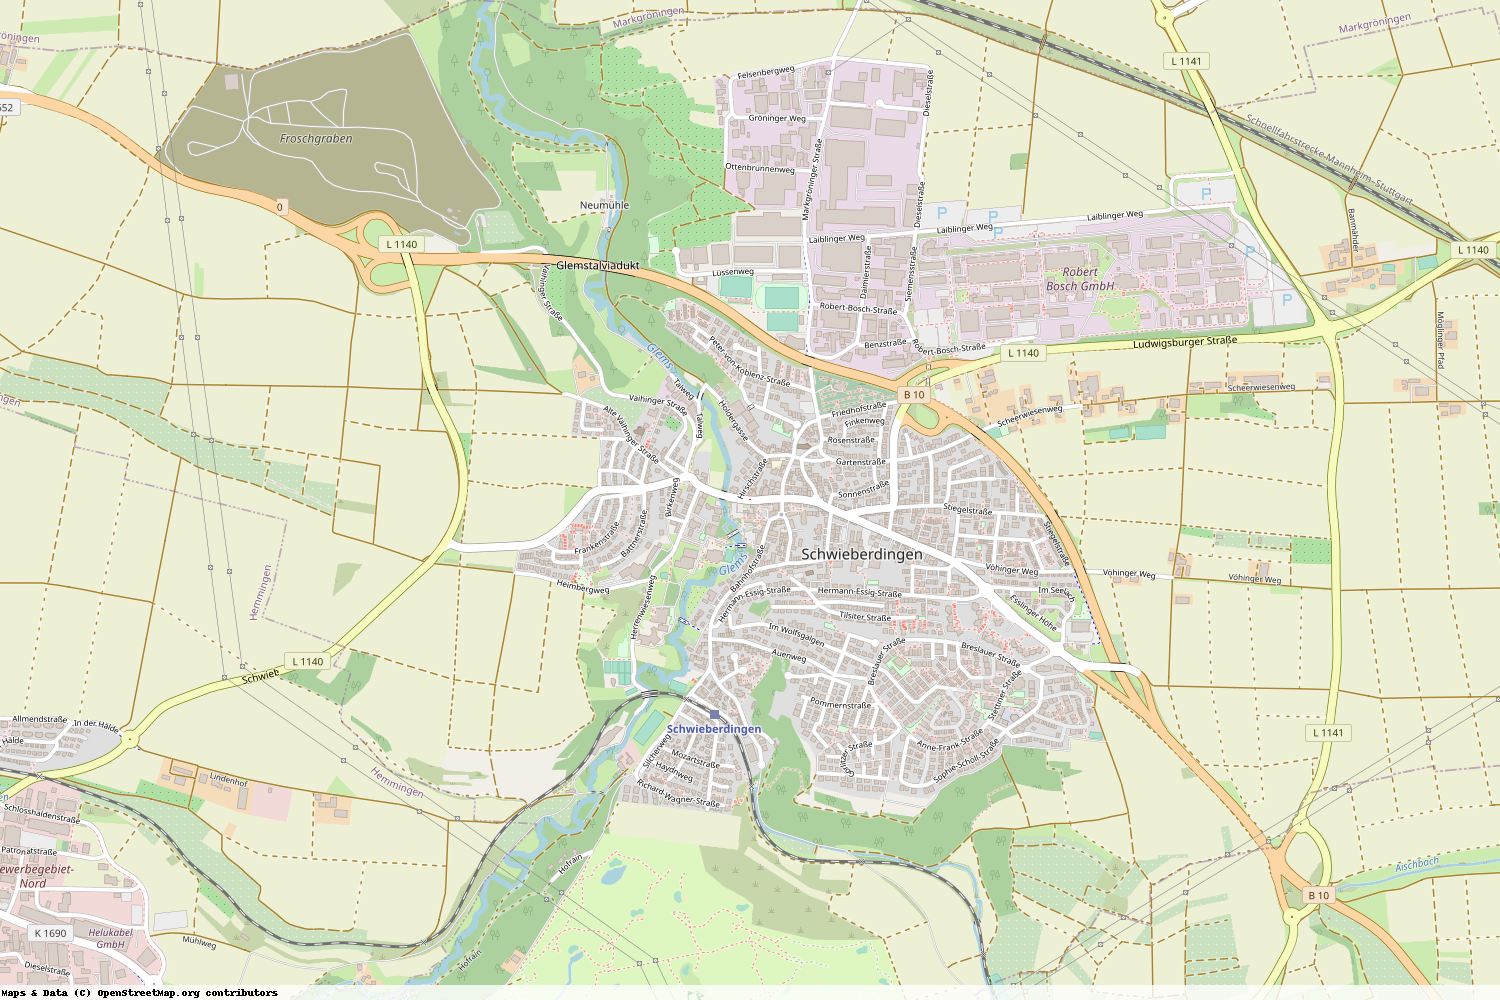 Ist gerade Stromausfall in Baden-Württemberg - Ludwigsburg - Schwieberdingen?